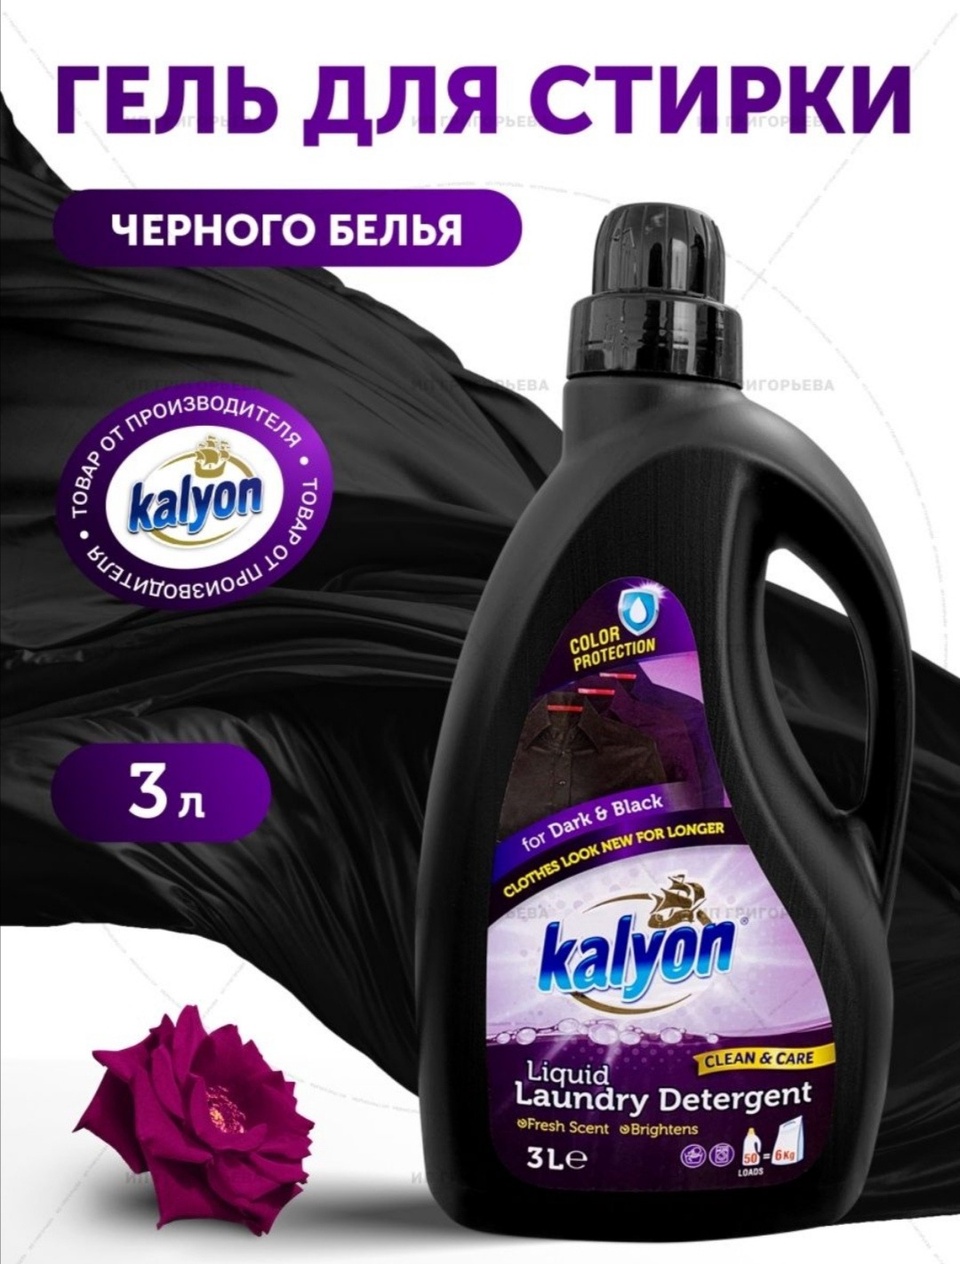 Kalyon жидкий порошок для чёрных и тёмных тканей - 760 ₽, заказать онлайн.